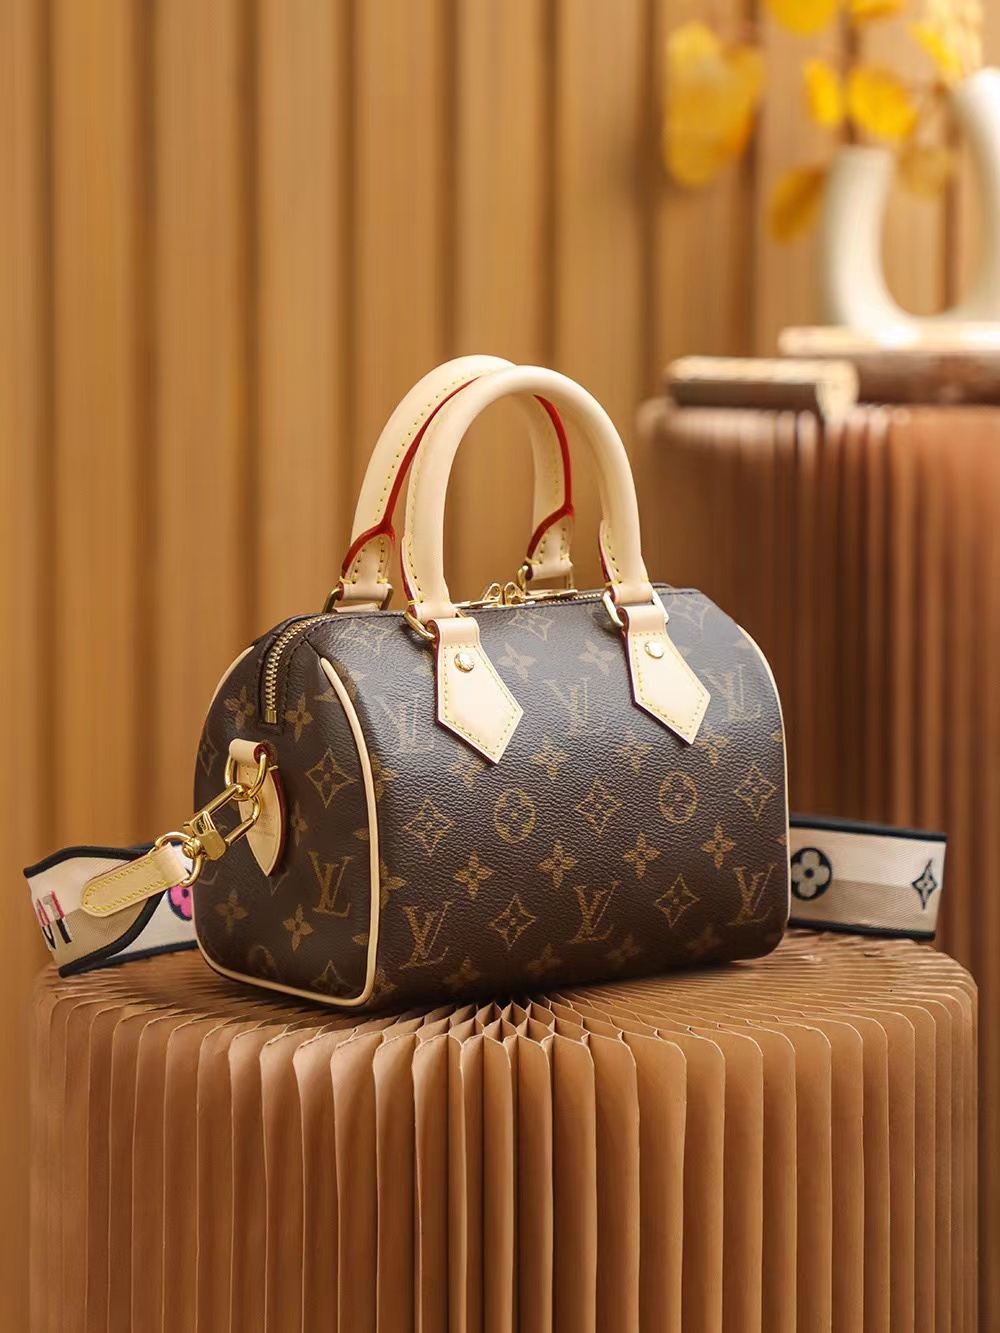 Best Replicas Bags - Louis Vuitton Speedy Bandoulière 20 M46234 Top Quality Louis Vuitton LV Replica Bags On Sales